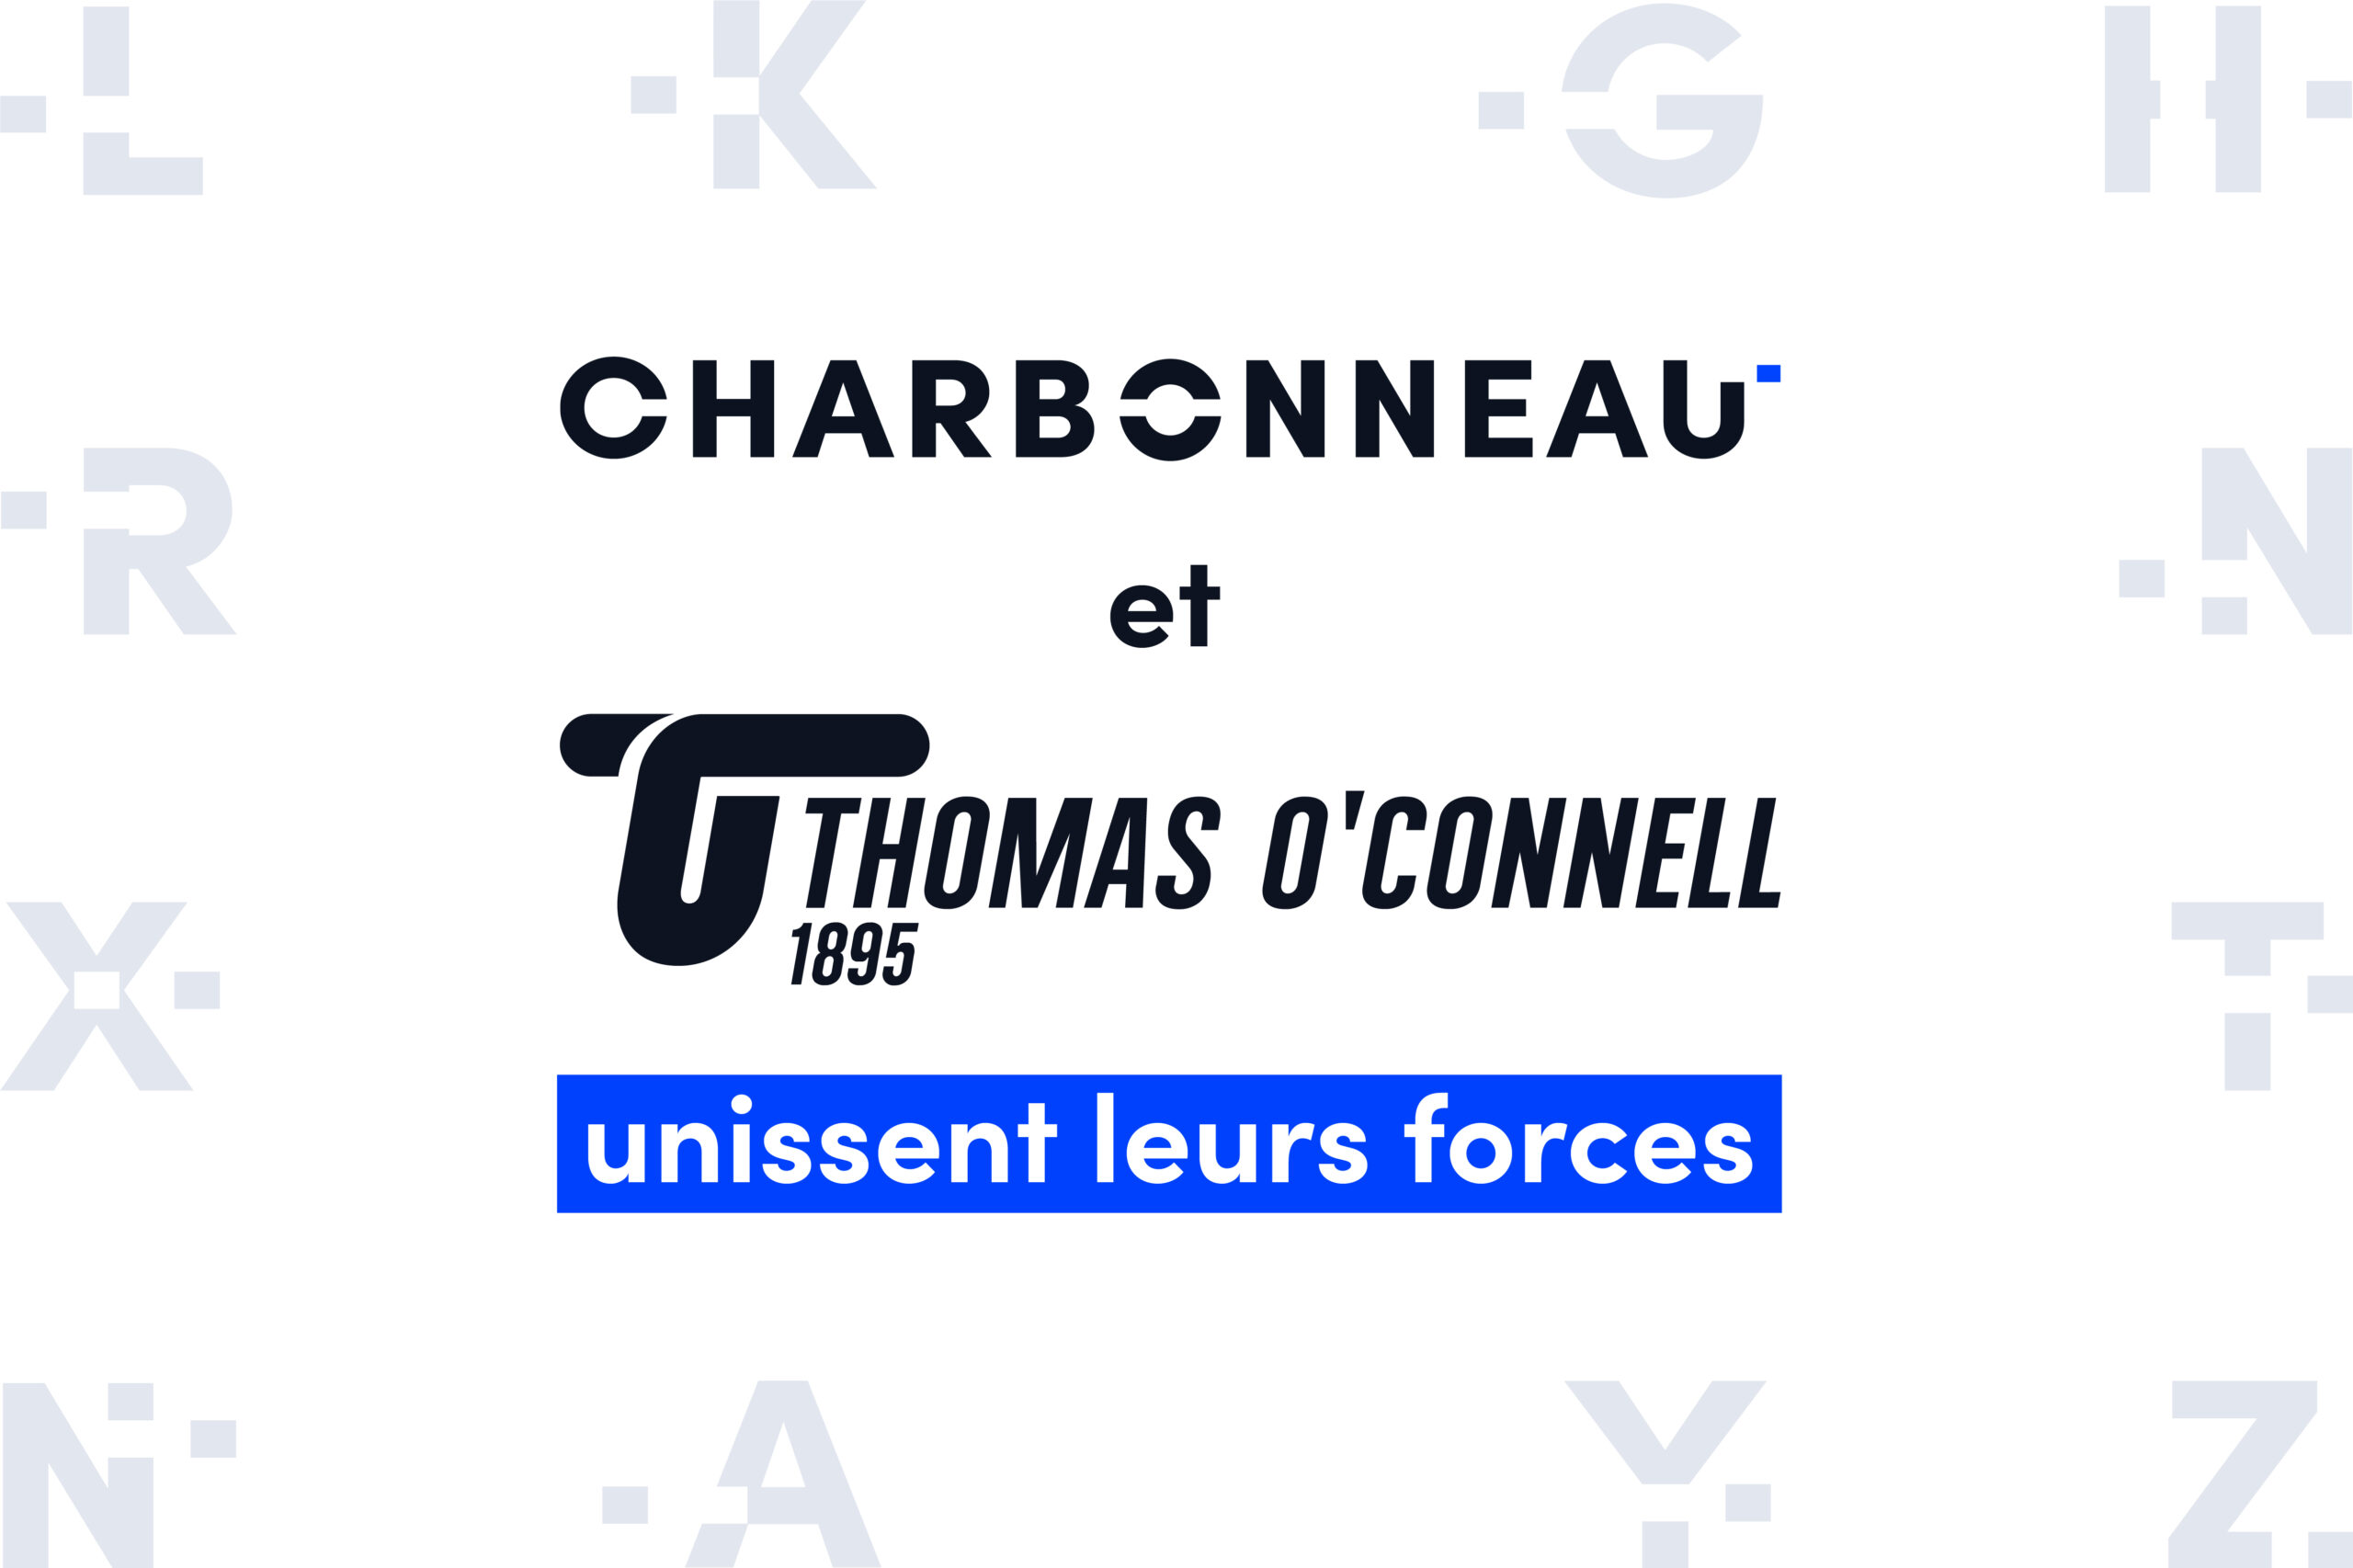 Charbonneau et Thomas O'Connel